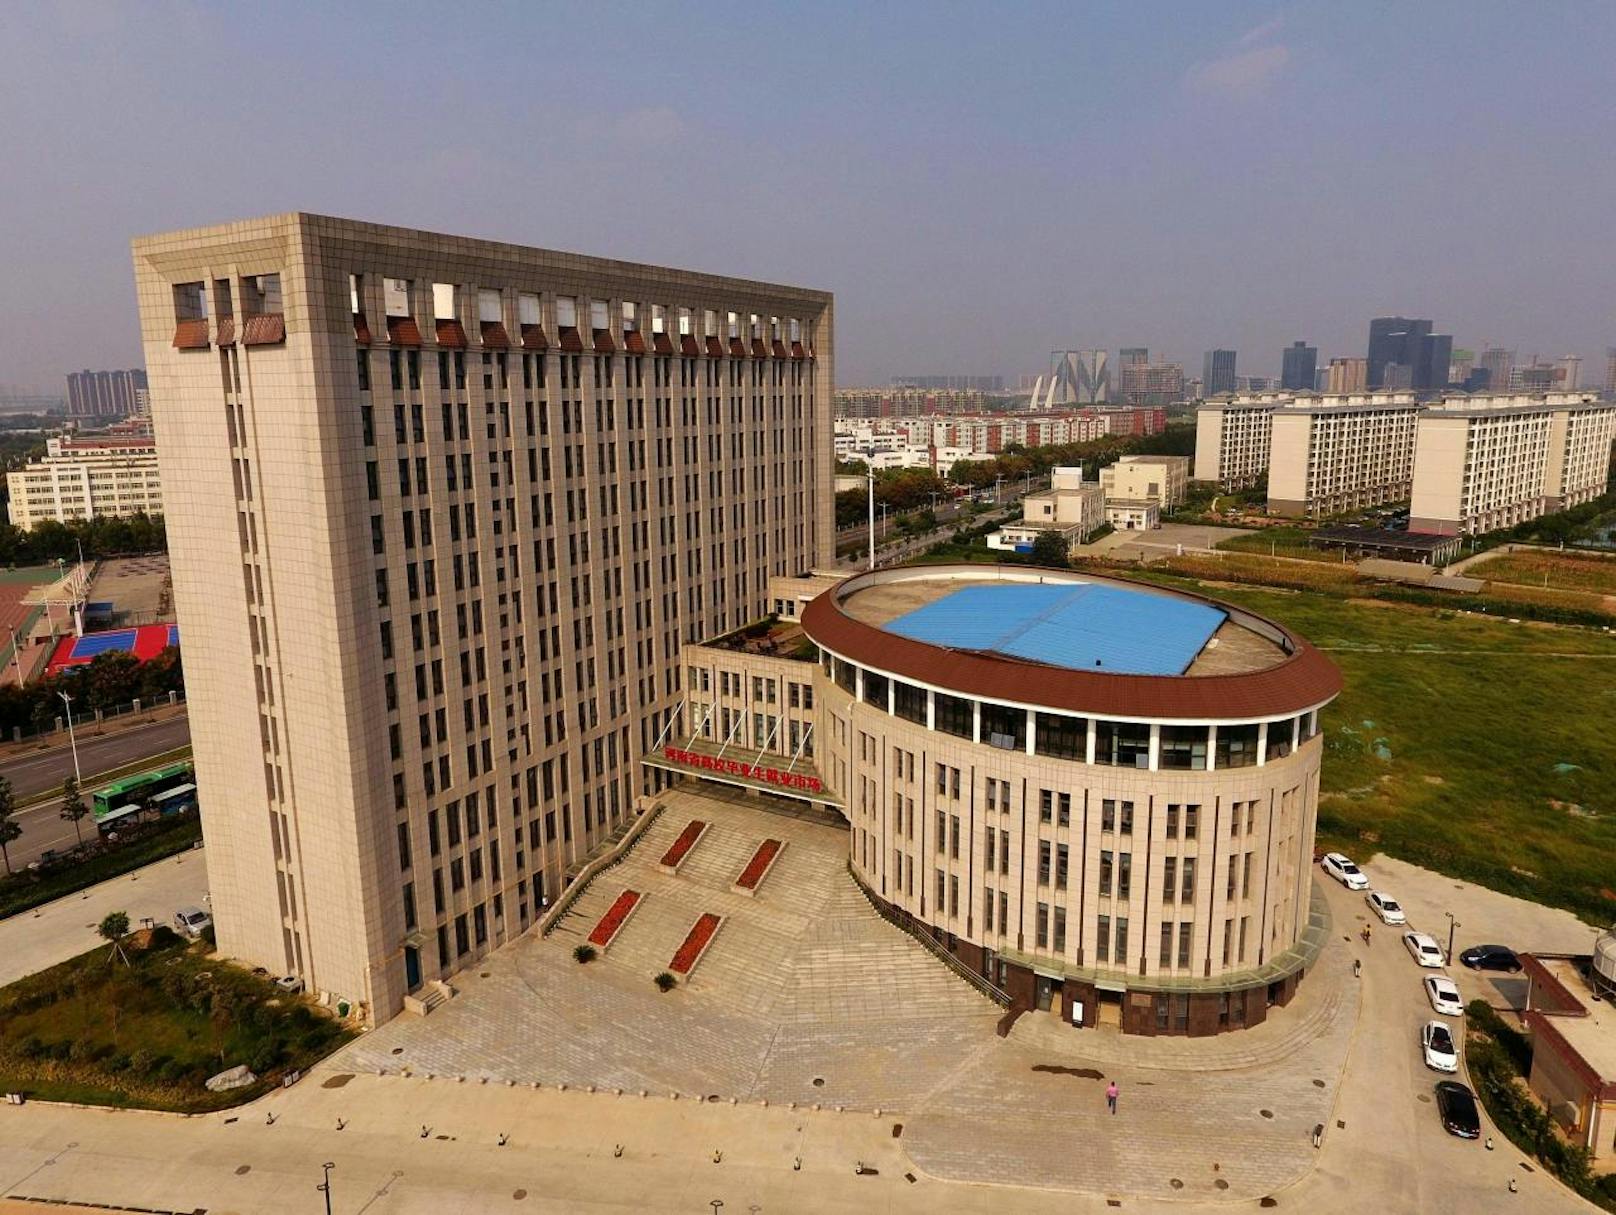 Das Universitätsgebäude in der chinesischen Stadt Zhengzhou hat eine eigenwillige Form. Für viele Social-Media-Nutzer erinnert es frappierend an eine Toilette.